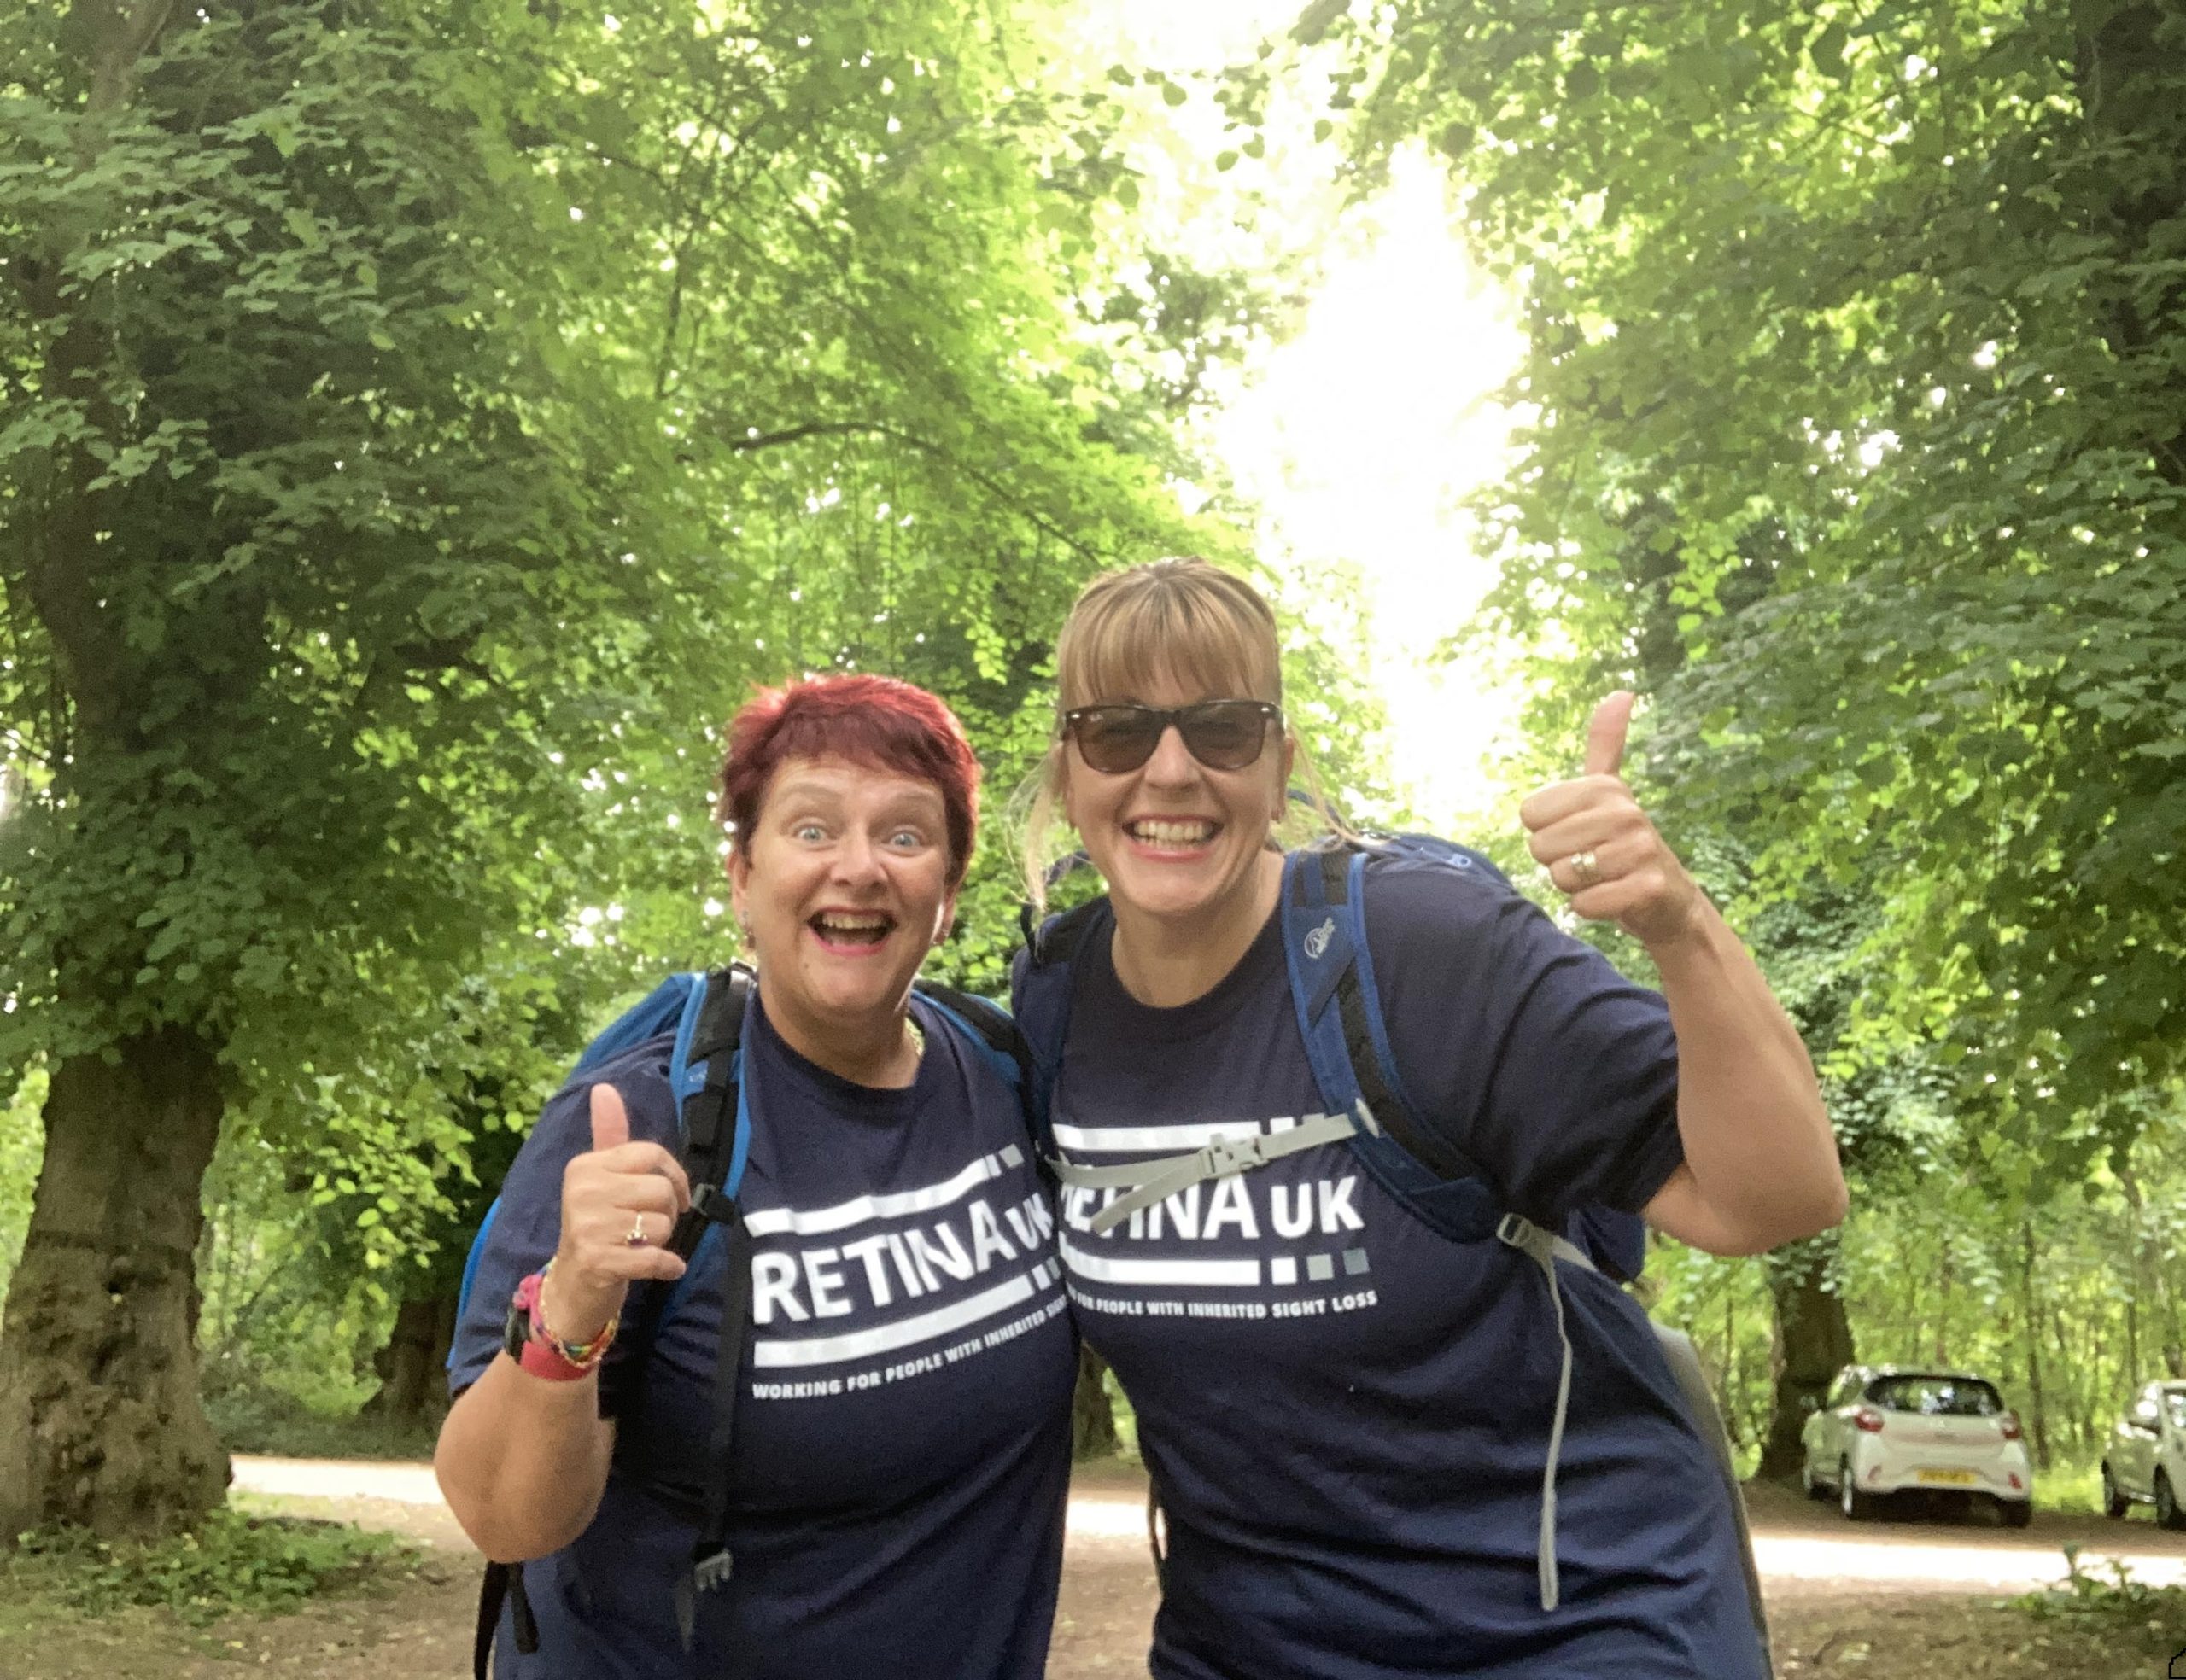 2 ladies hiking, wearing Retina UK t-shirts.